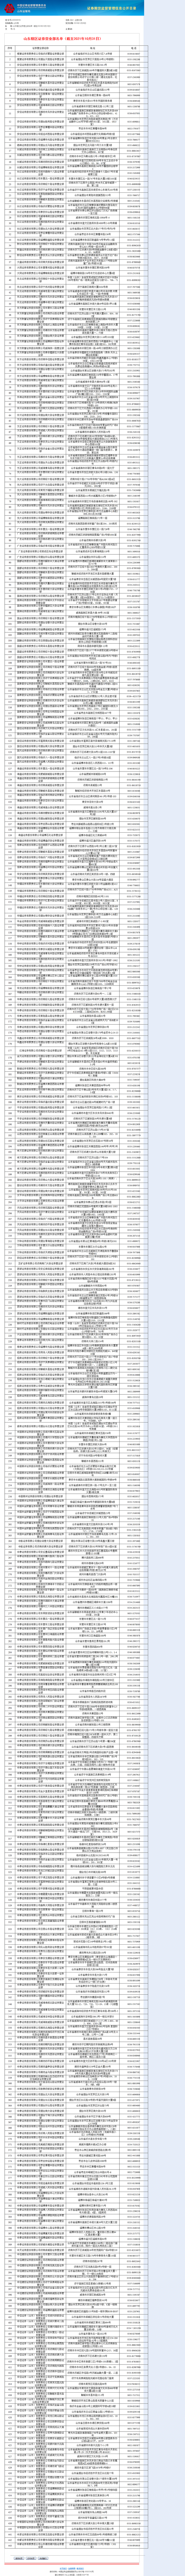 山东辖区证券营业部名单（截至2021年10月31日）